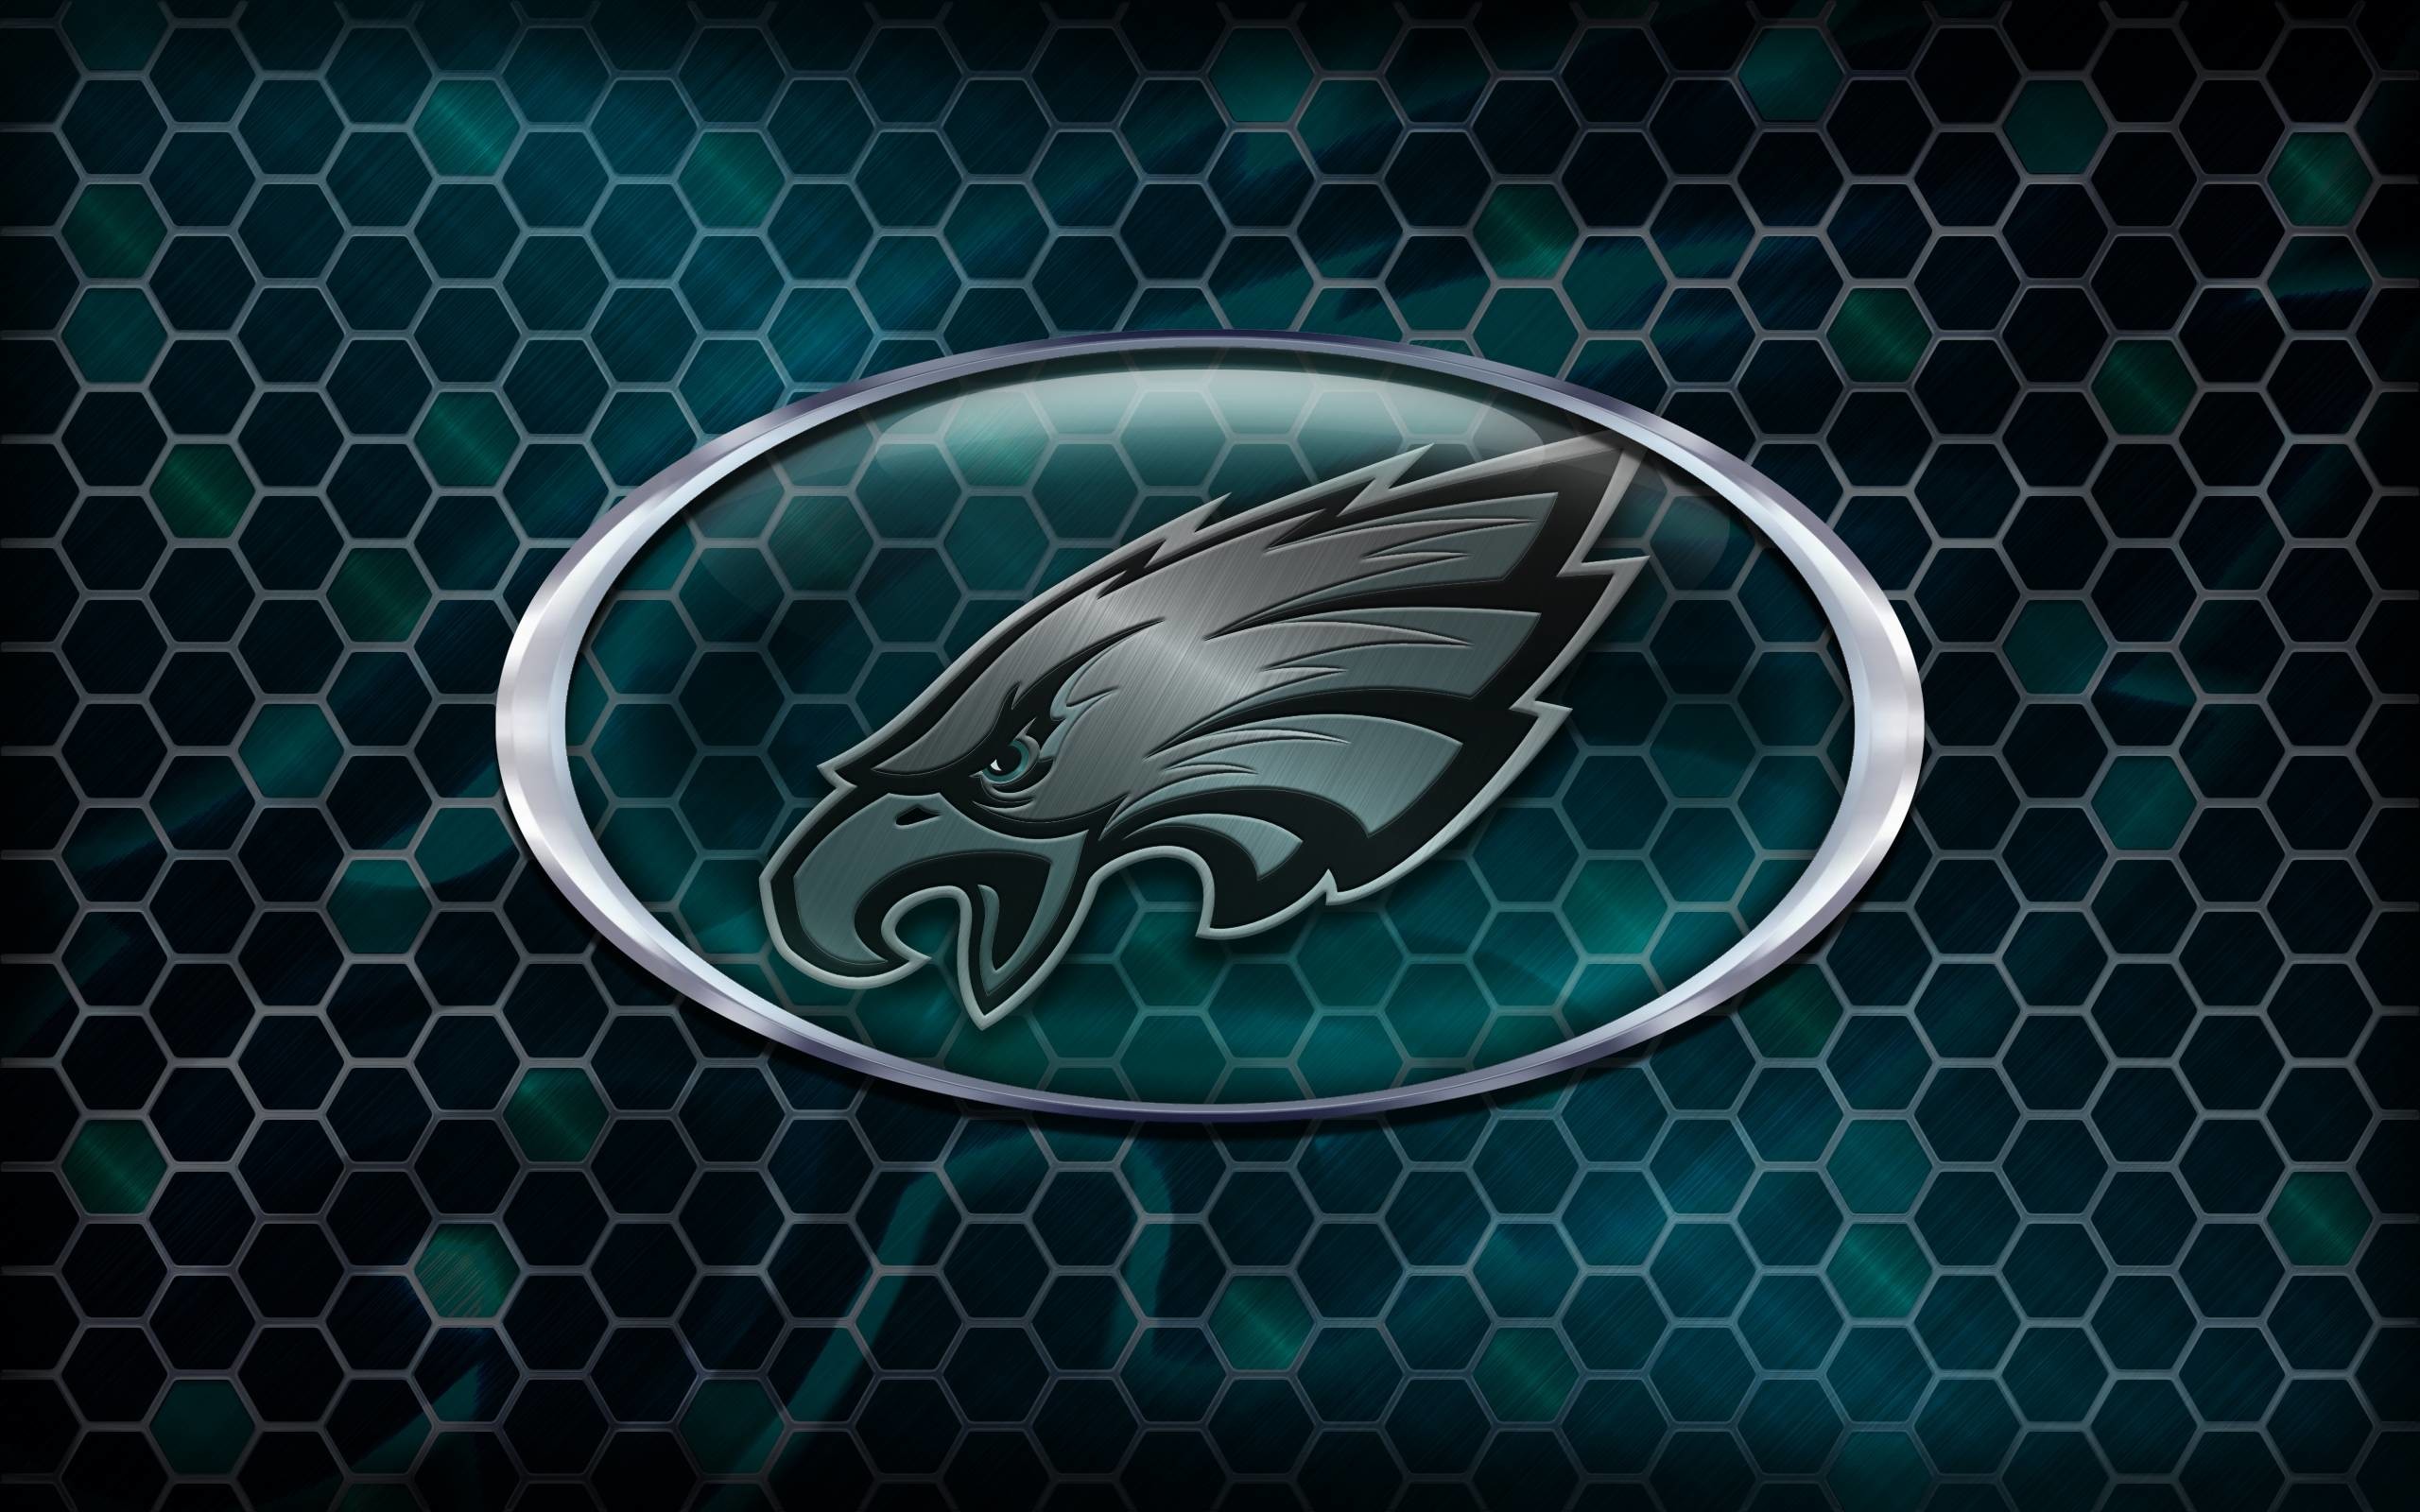 Philadelphia Eagles 2014 NFL Logo Wallpaper Wide or HD Sports